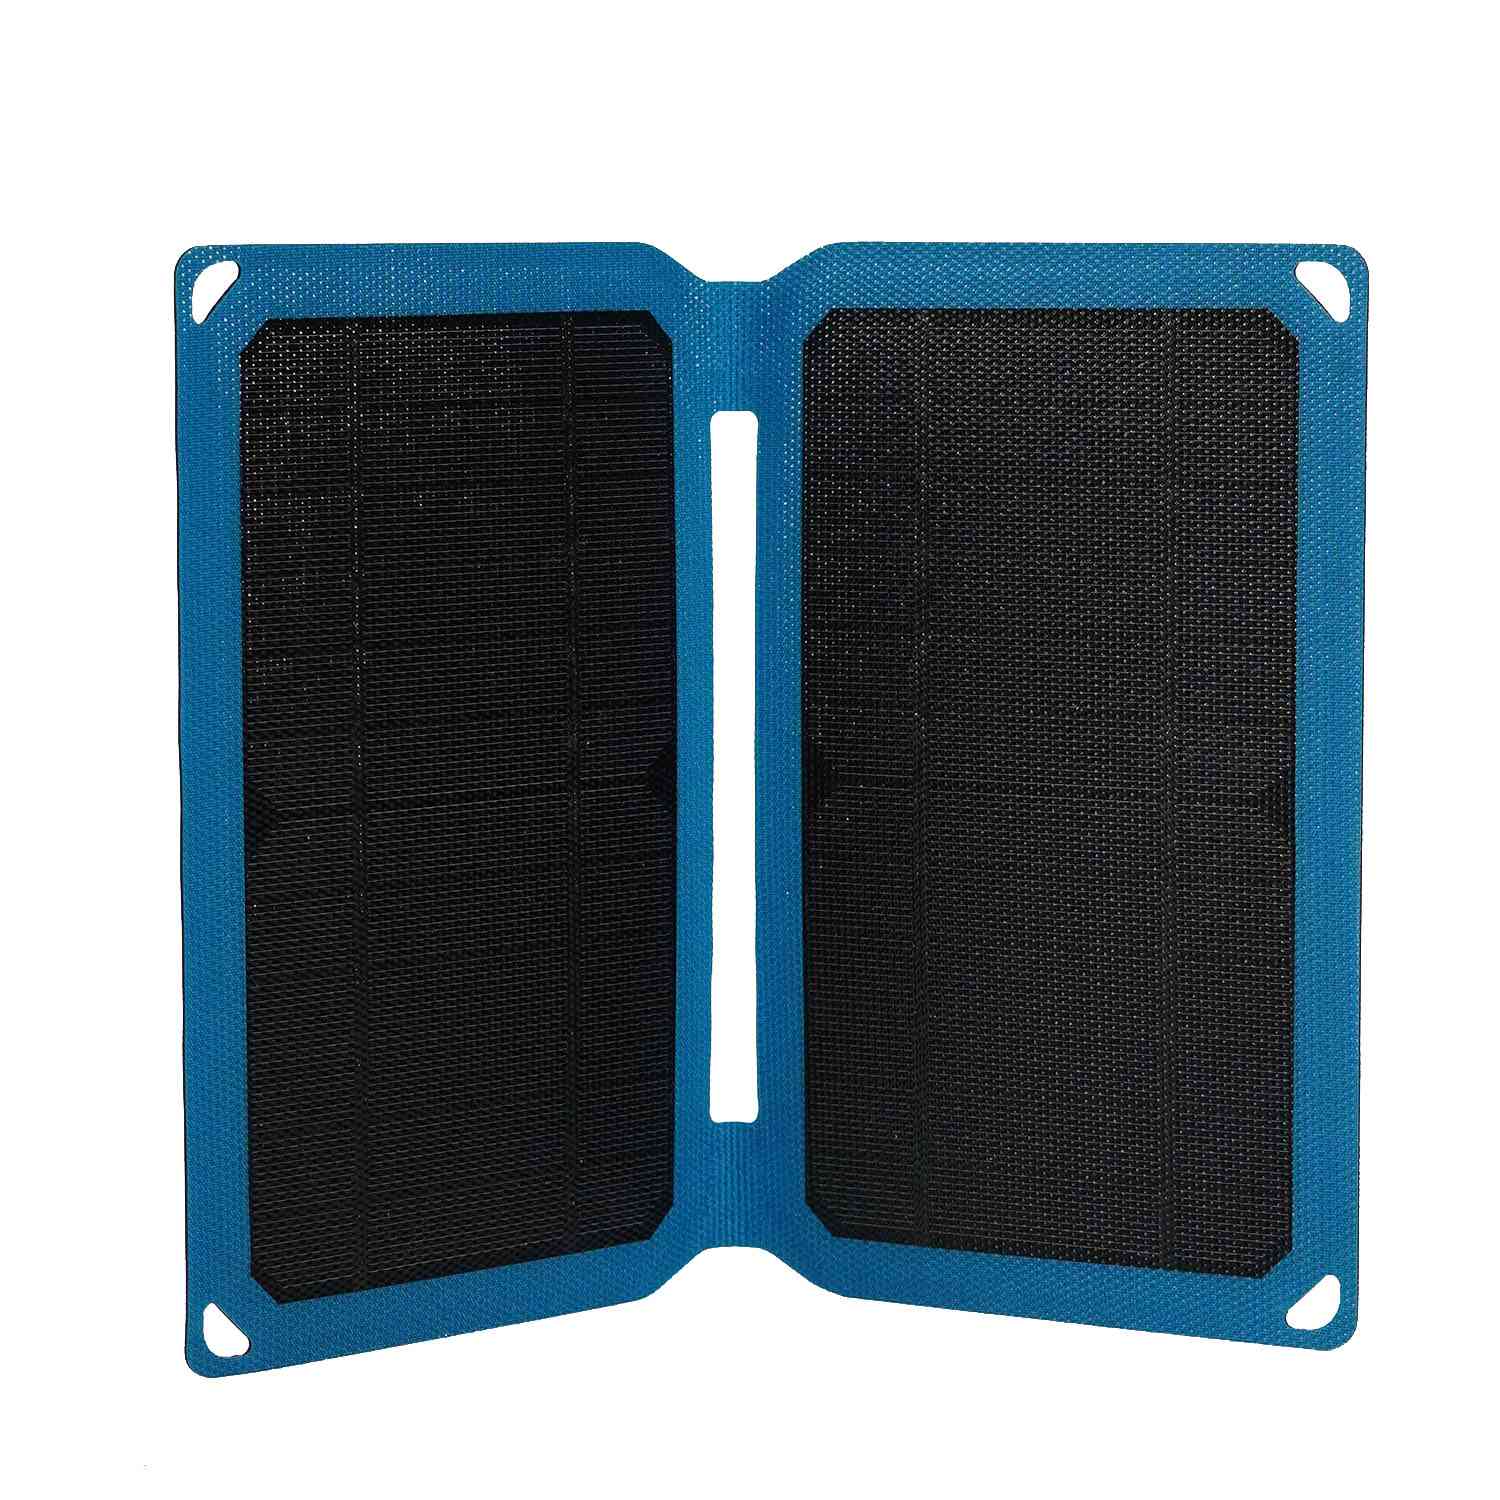 Mini pannello solare portatile da 10 W